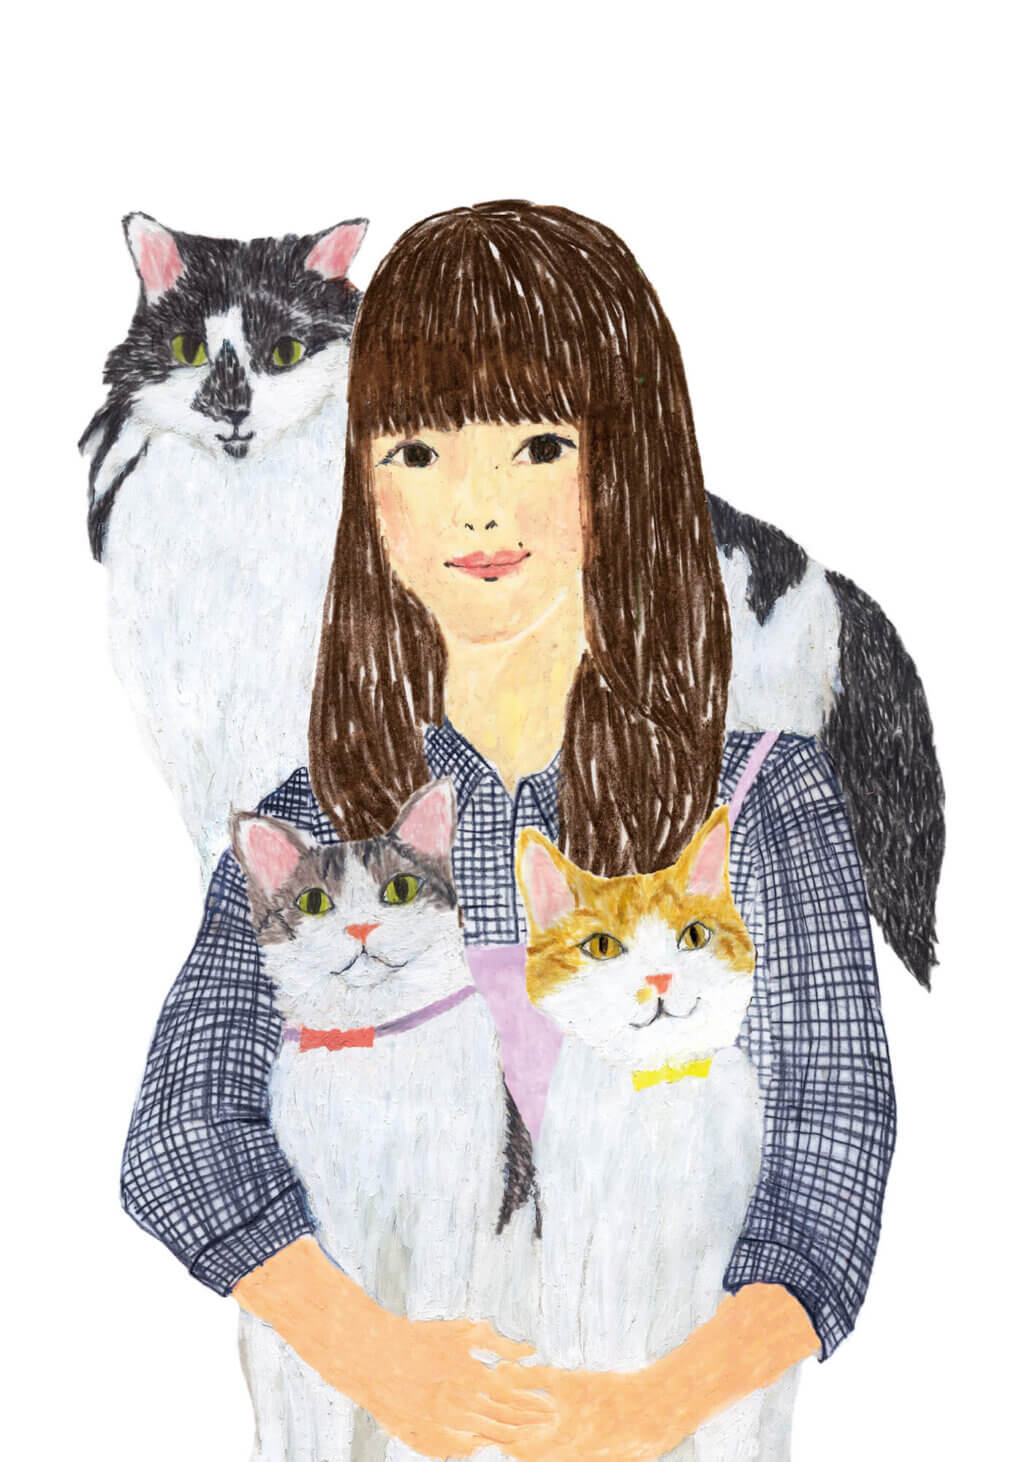 「ねこのきもち」イラストカット ベネッセ 2020年1月号「女性と3匹の猫」